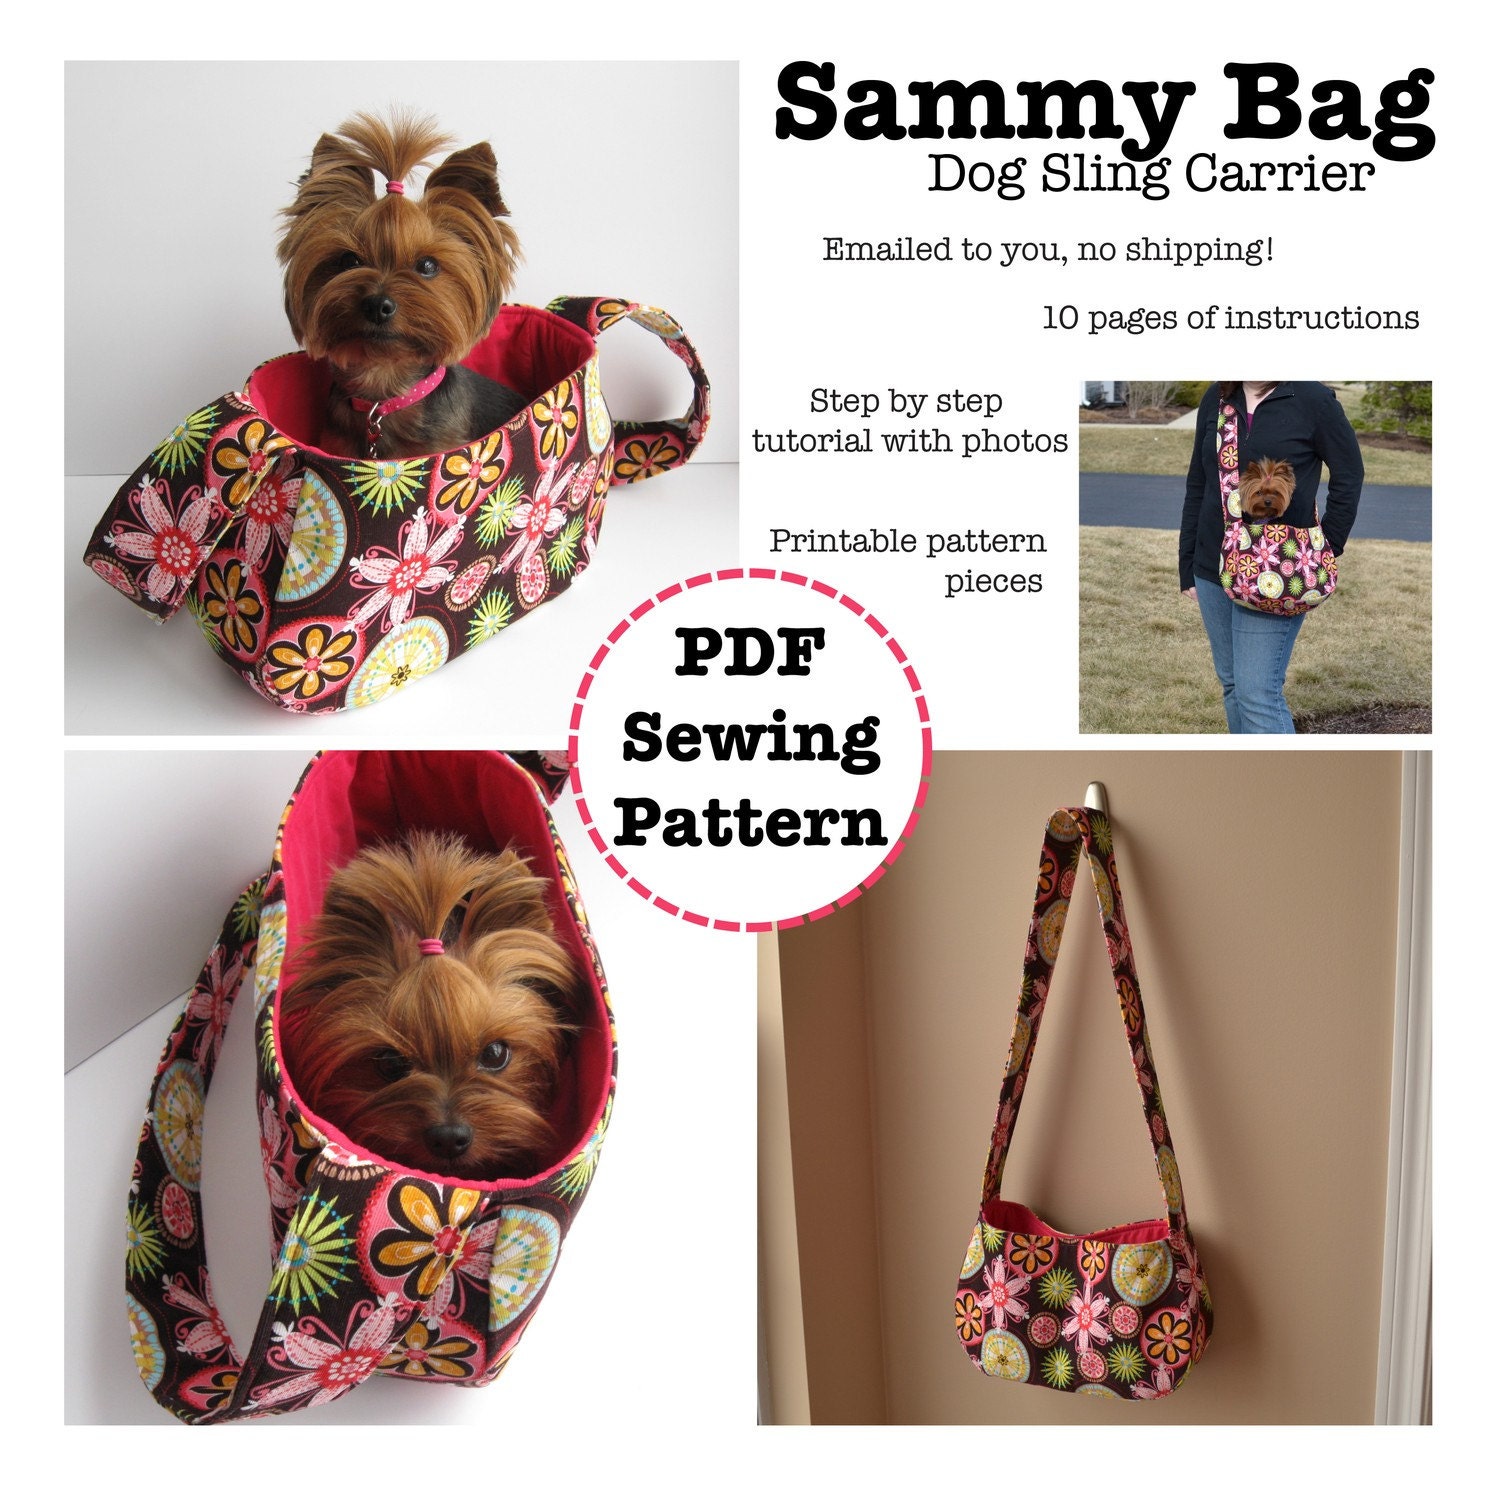 Sammy Bag Dog Sling Carrier PDF Pattern